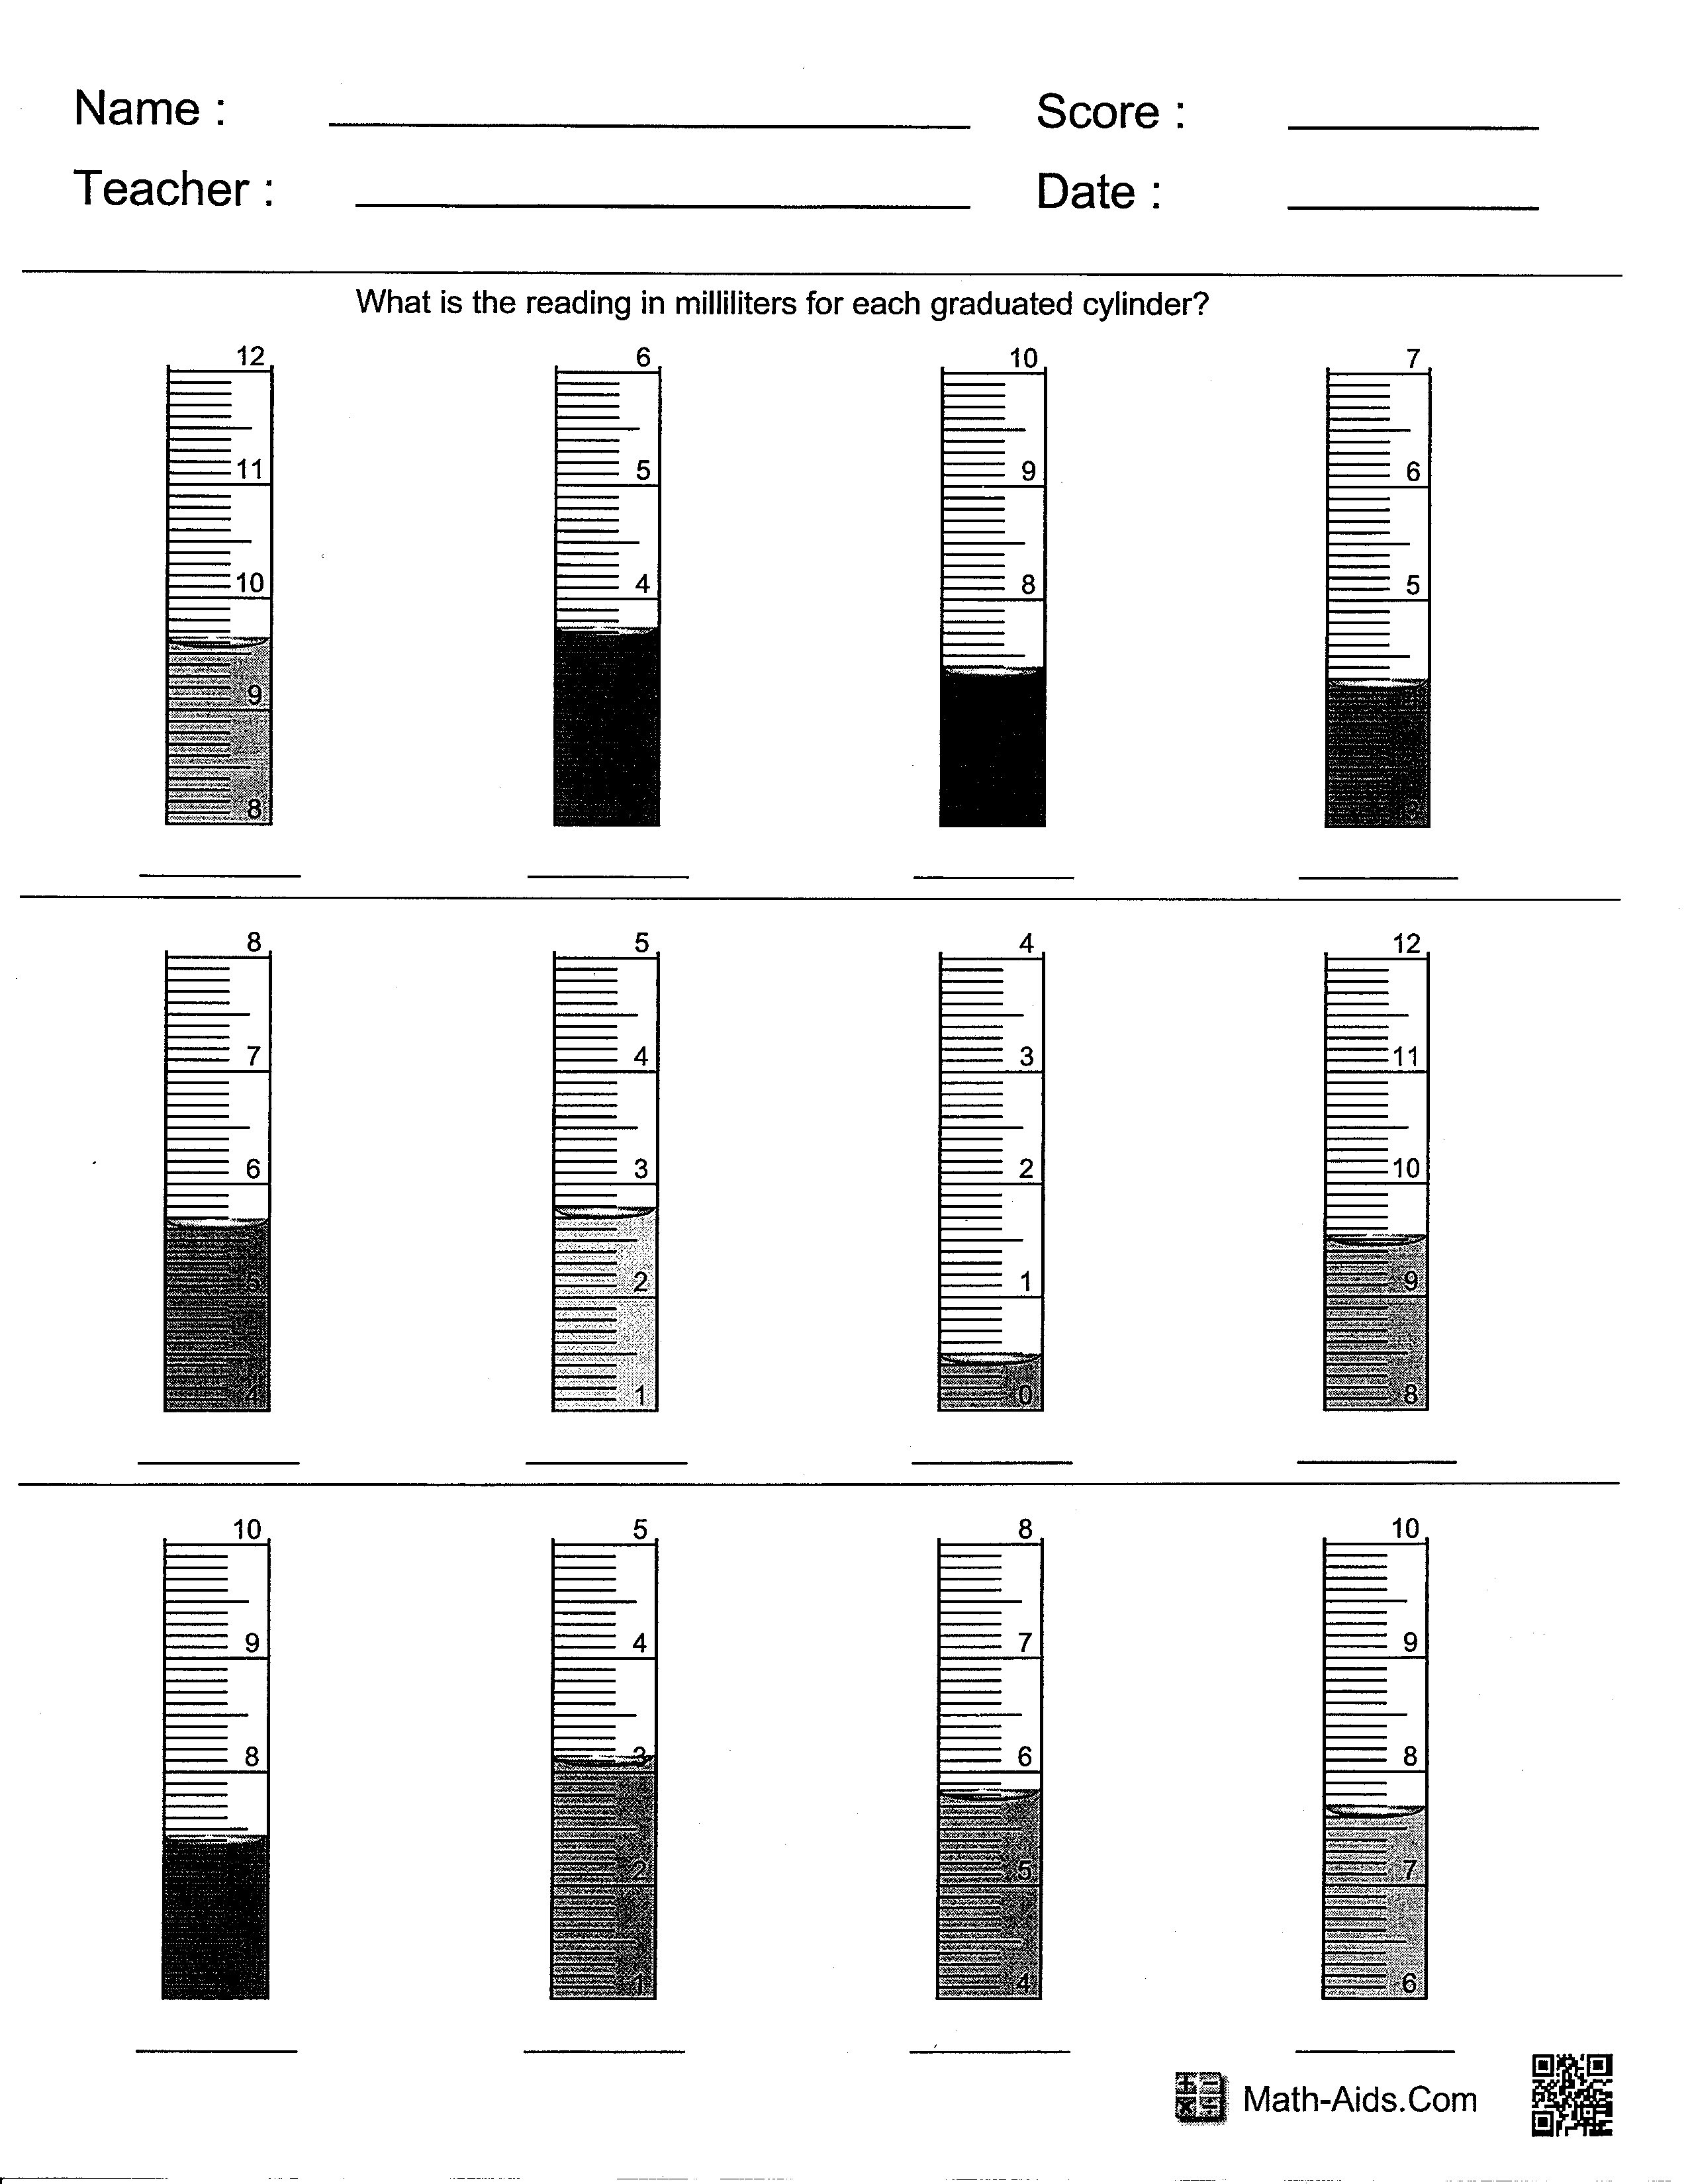 Graduated Cylinder Measuring Liquid Volume Worksheet - Nidecmege In Reading A Graduated Cylinder Worksheet